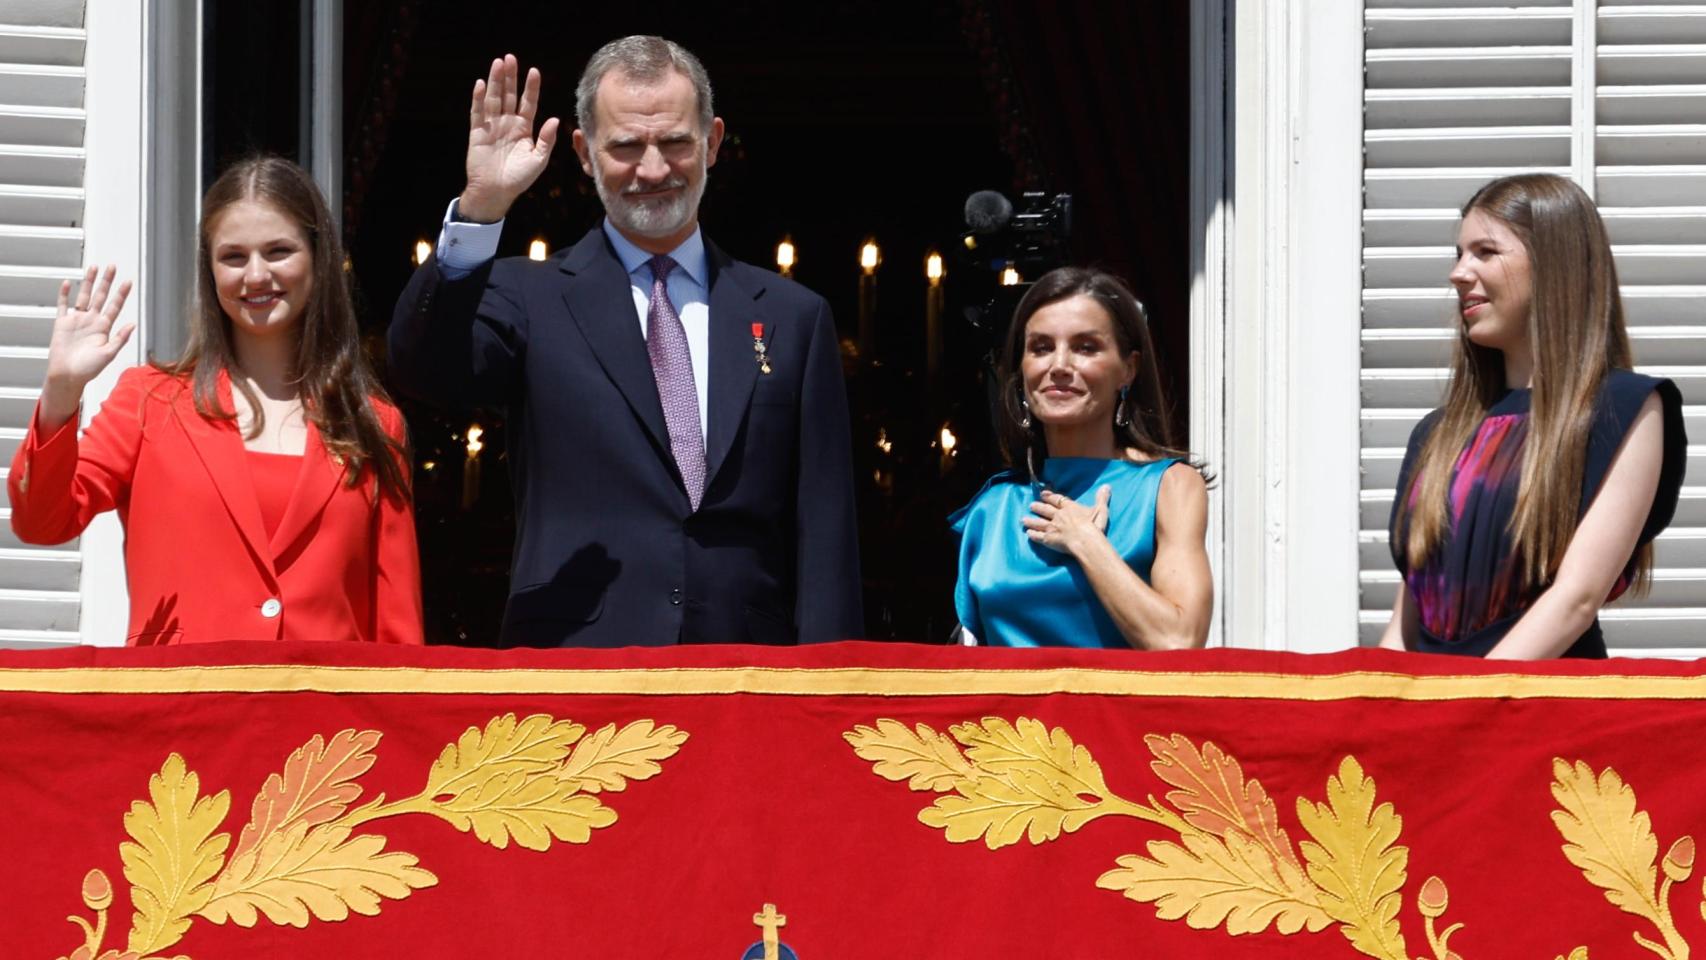 La Familia Real saludando desde el balcón en el décimo aniversario de Felipe VI como Rey de España.